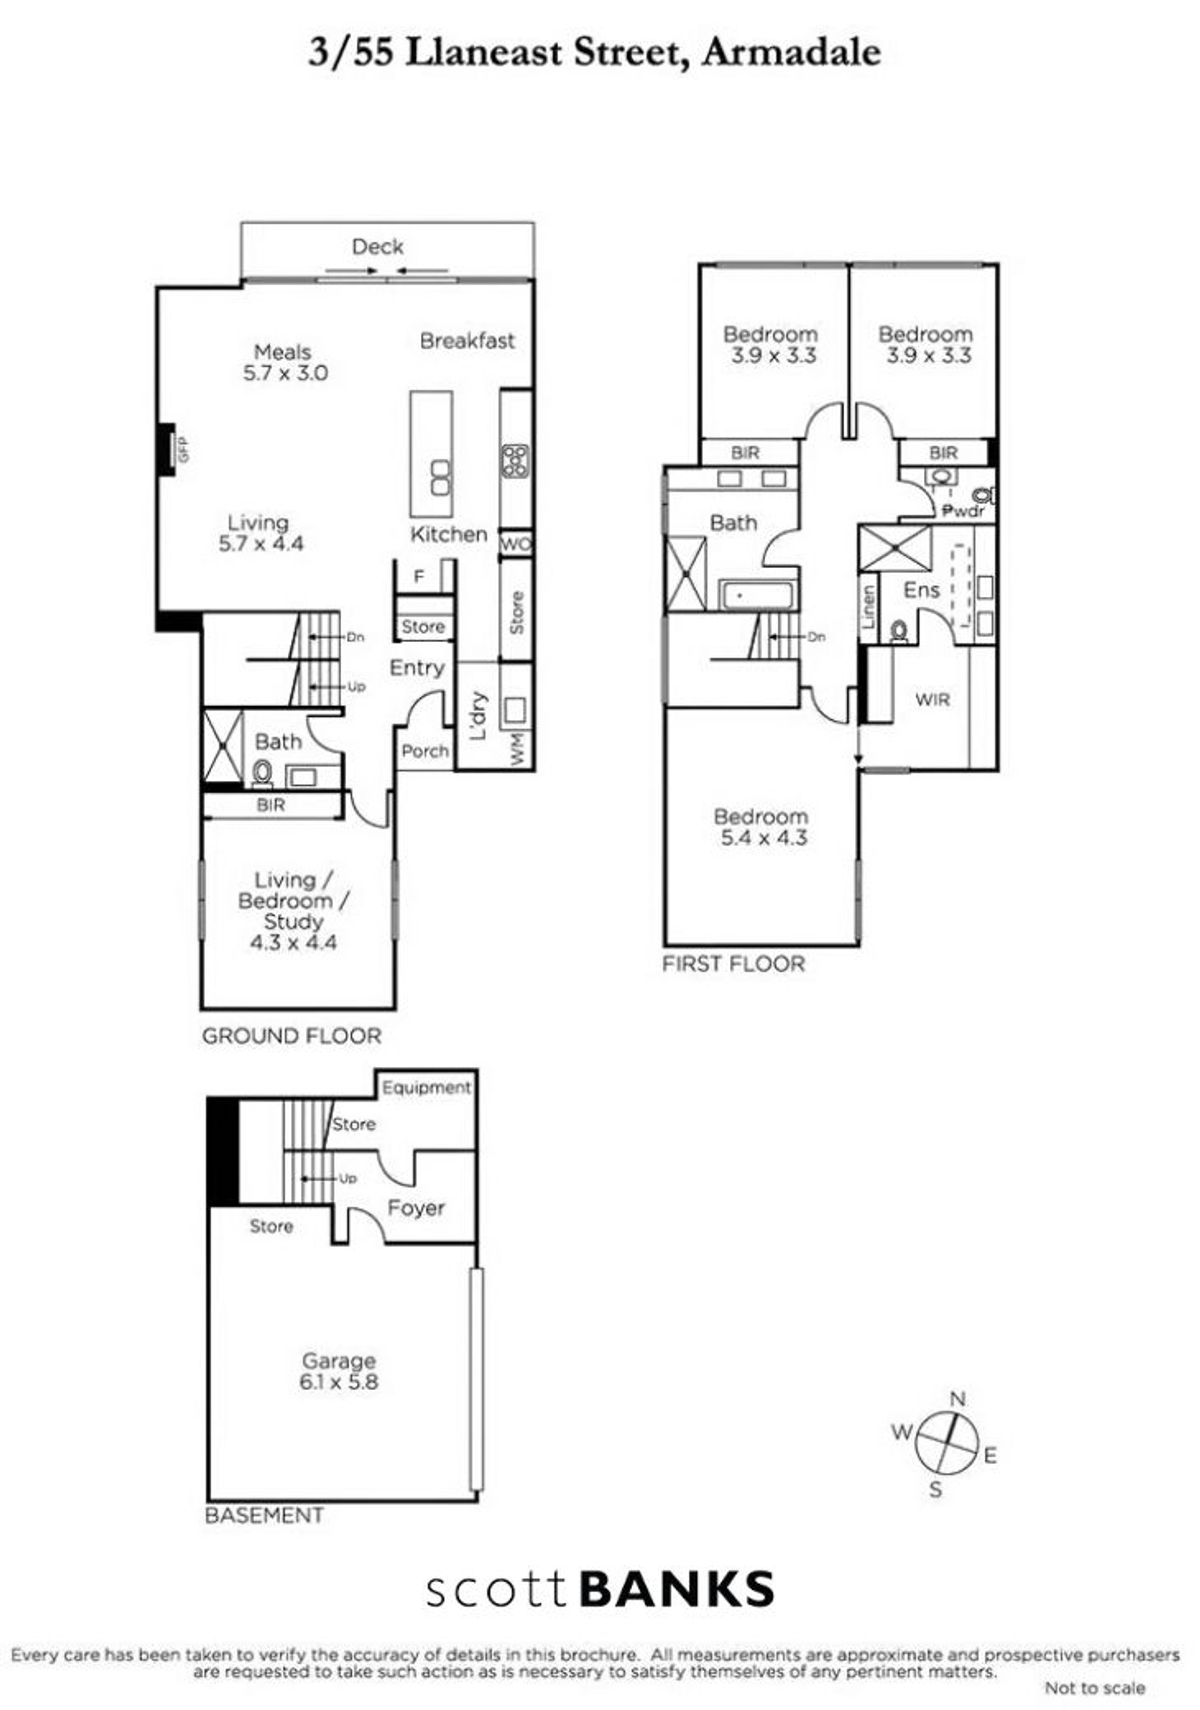 3/55 Llaneast Street Armadale - Floor Plan